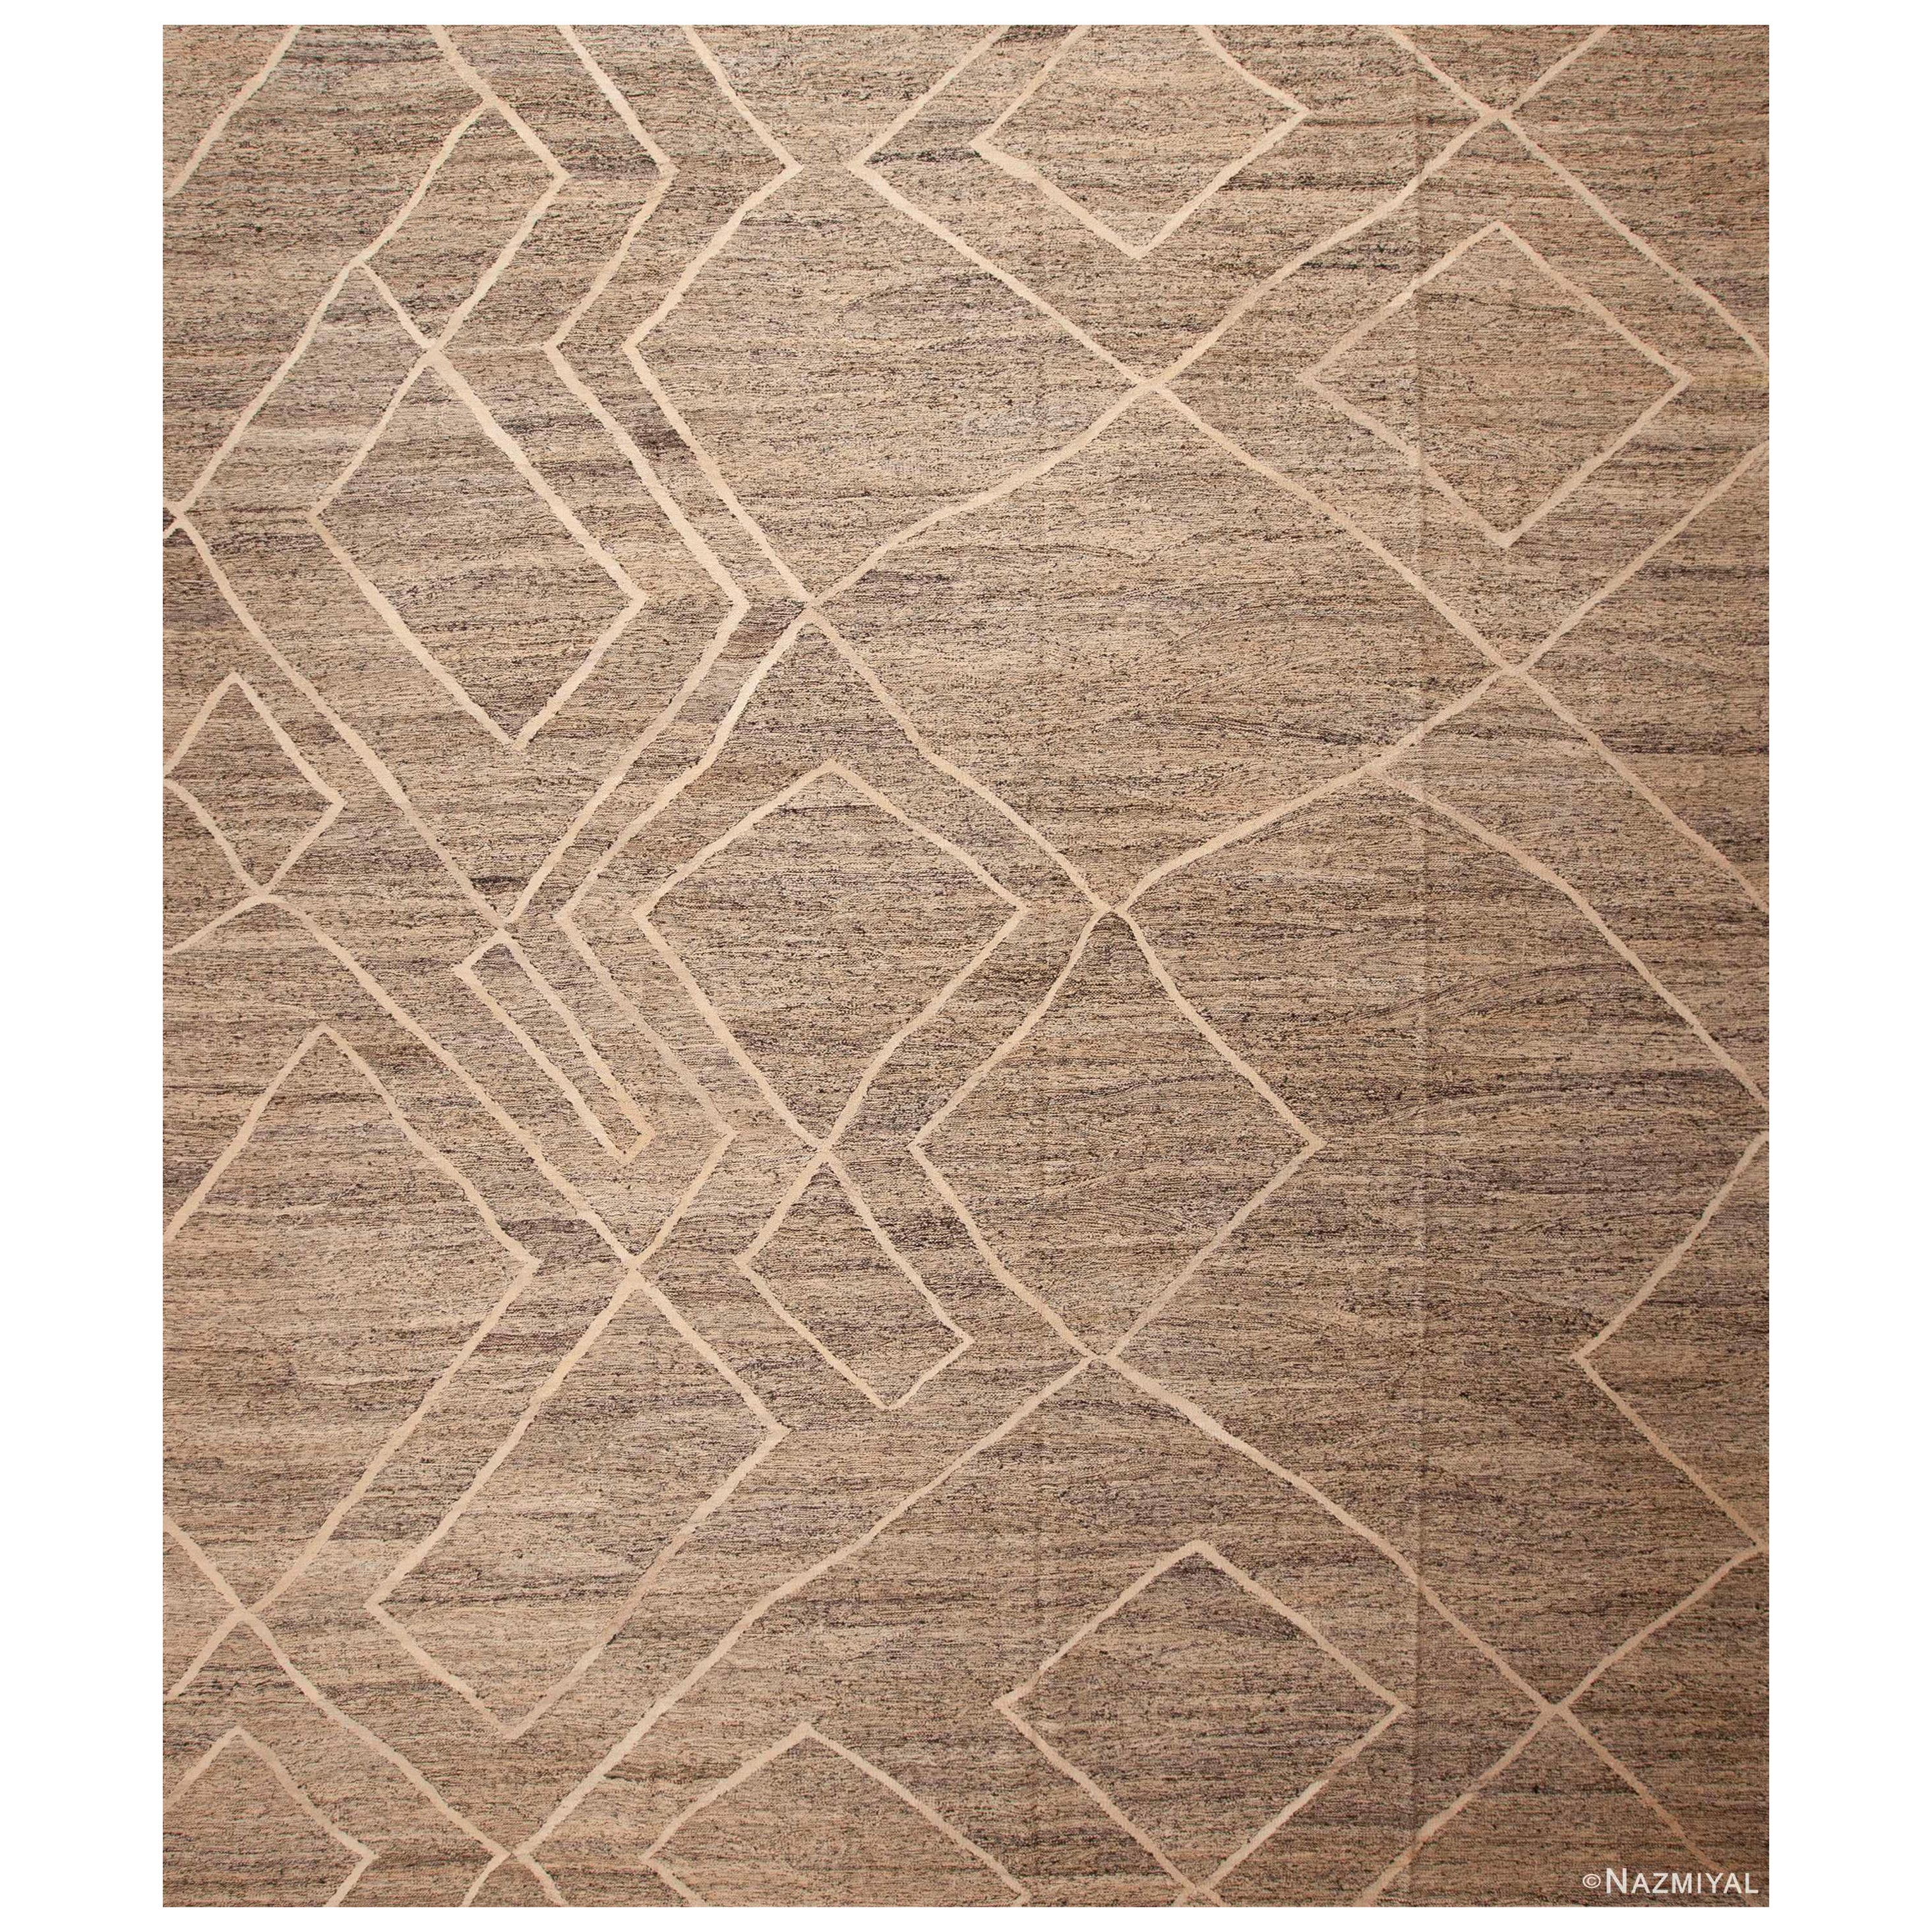 Collection Nazmiyal Tapis Kilim tribal géométrique moderne tissé à plat 13'6" x 15'7" en vente